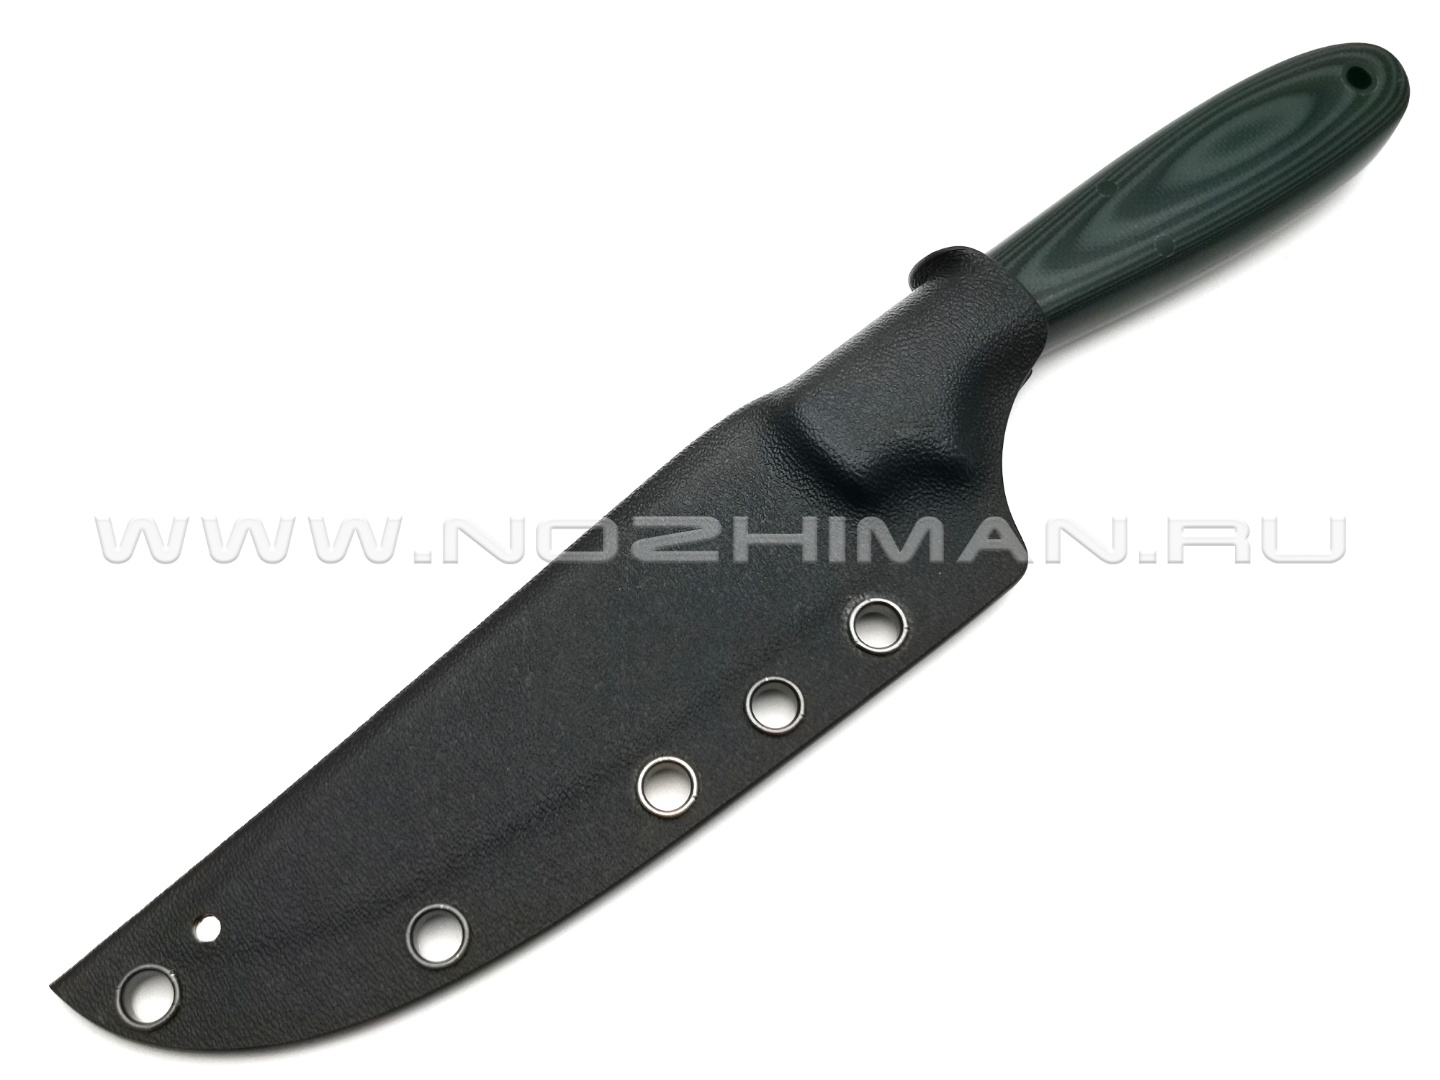 Apus Knives нож Wilson Long сталь N690, рукоять G10 black & green